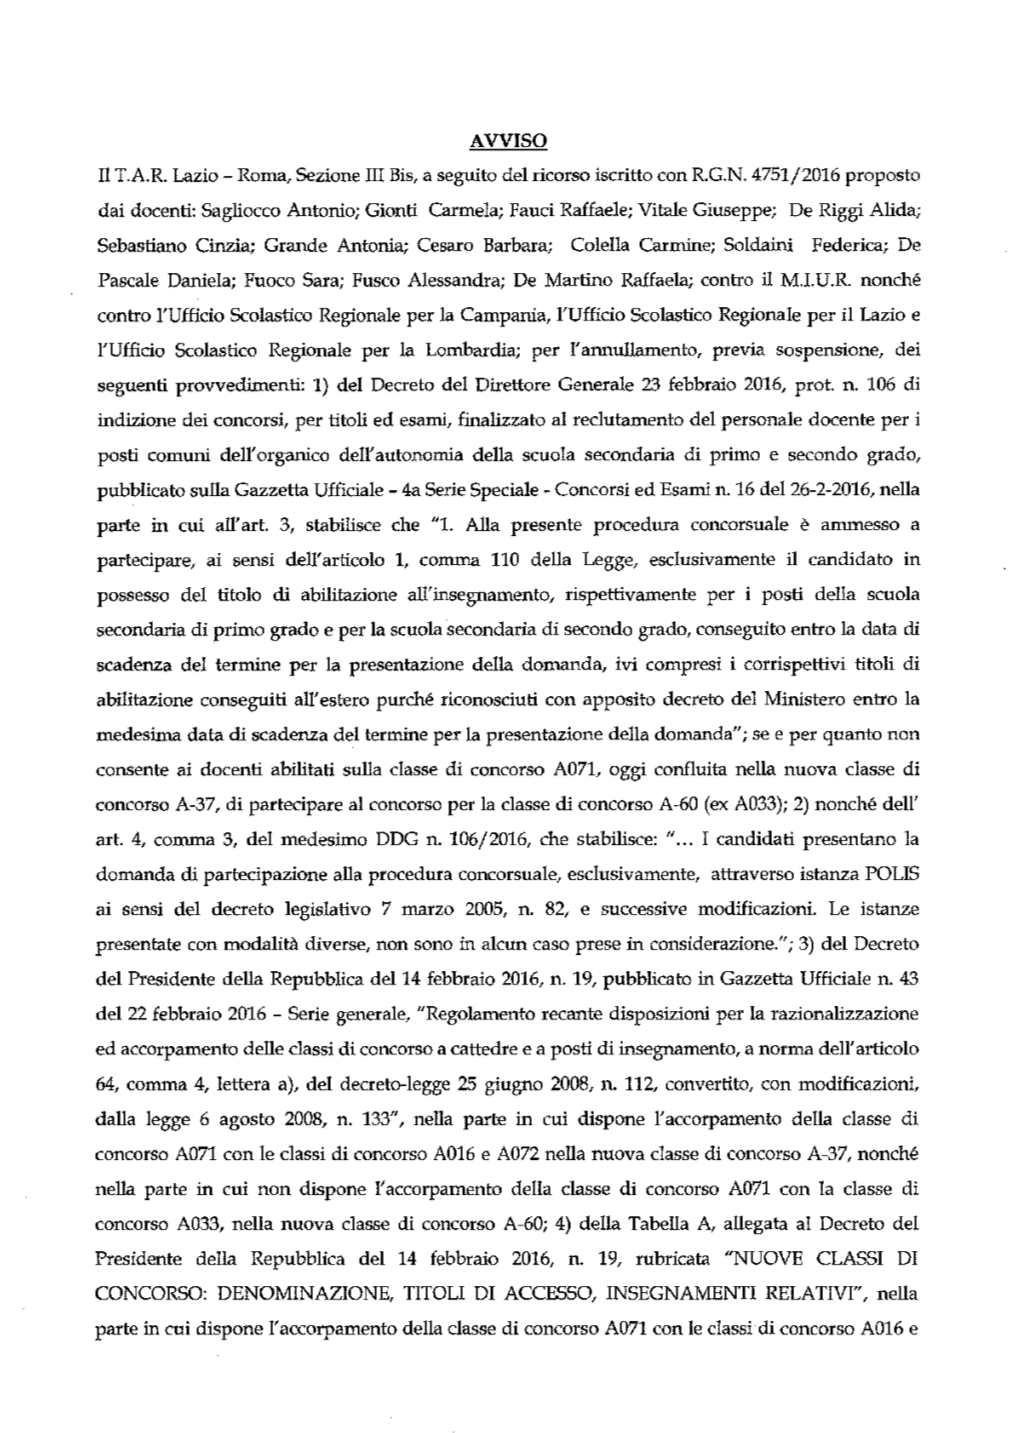 Roma, Sezione III Bis, a Seguito Del Ricorso Iscritto Con RGN 4751/2016